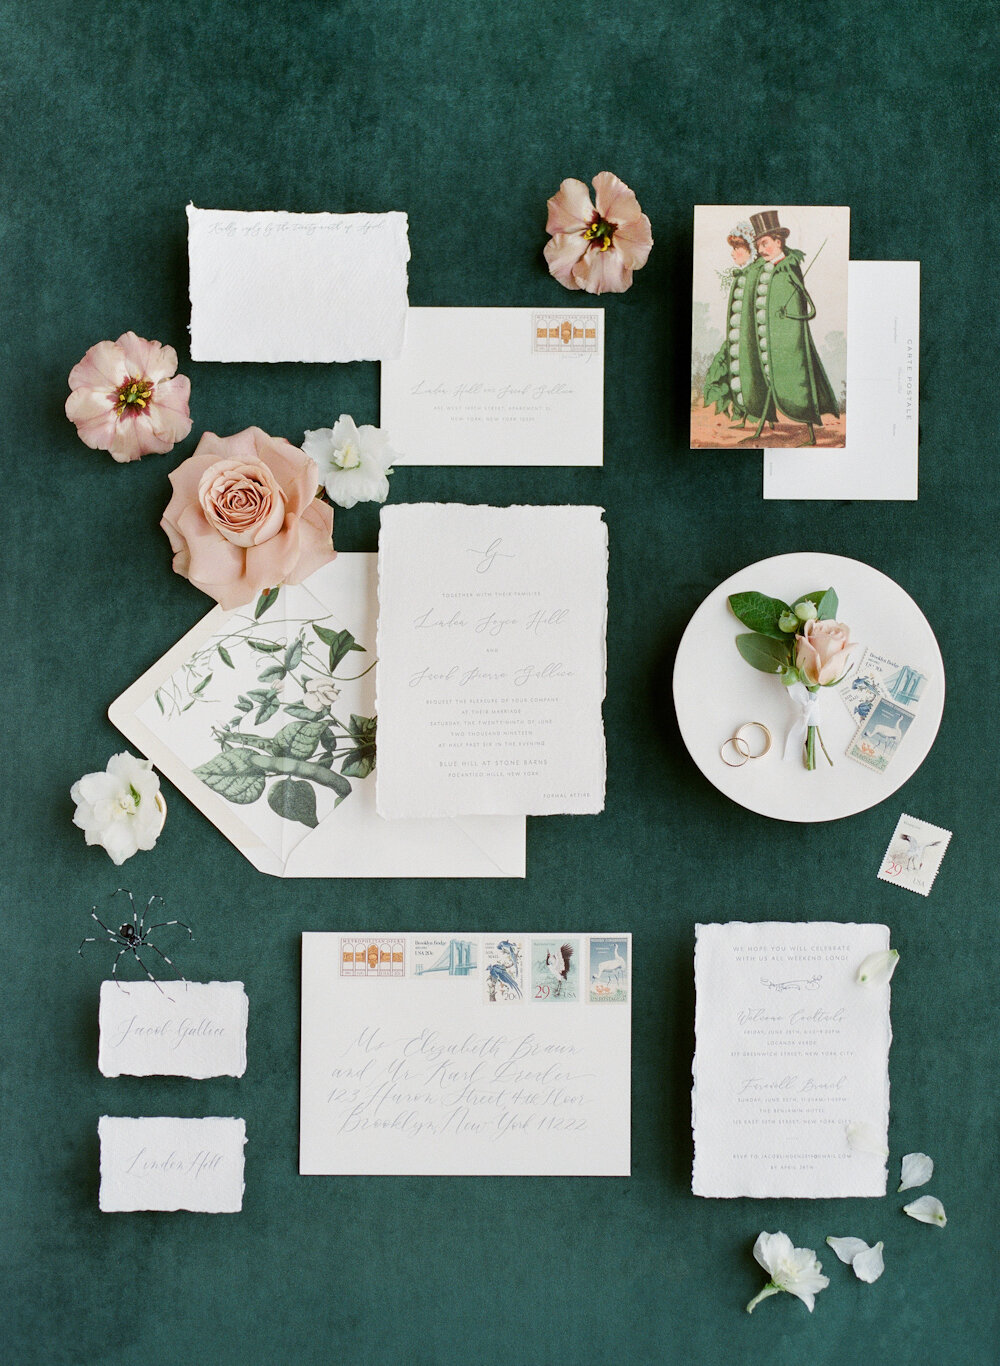 Blue Hill at Stone Barns wedding invitation suite lettepress deckled paper vintage stamps